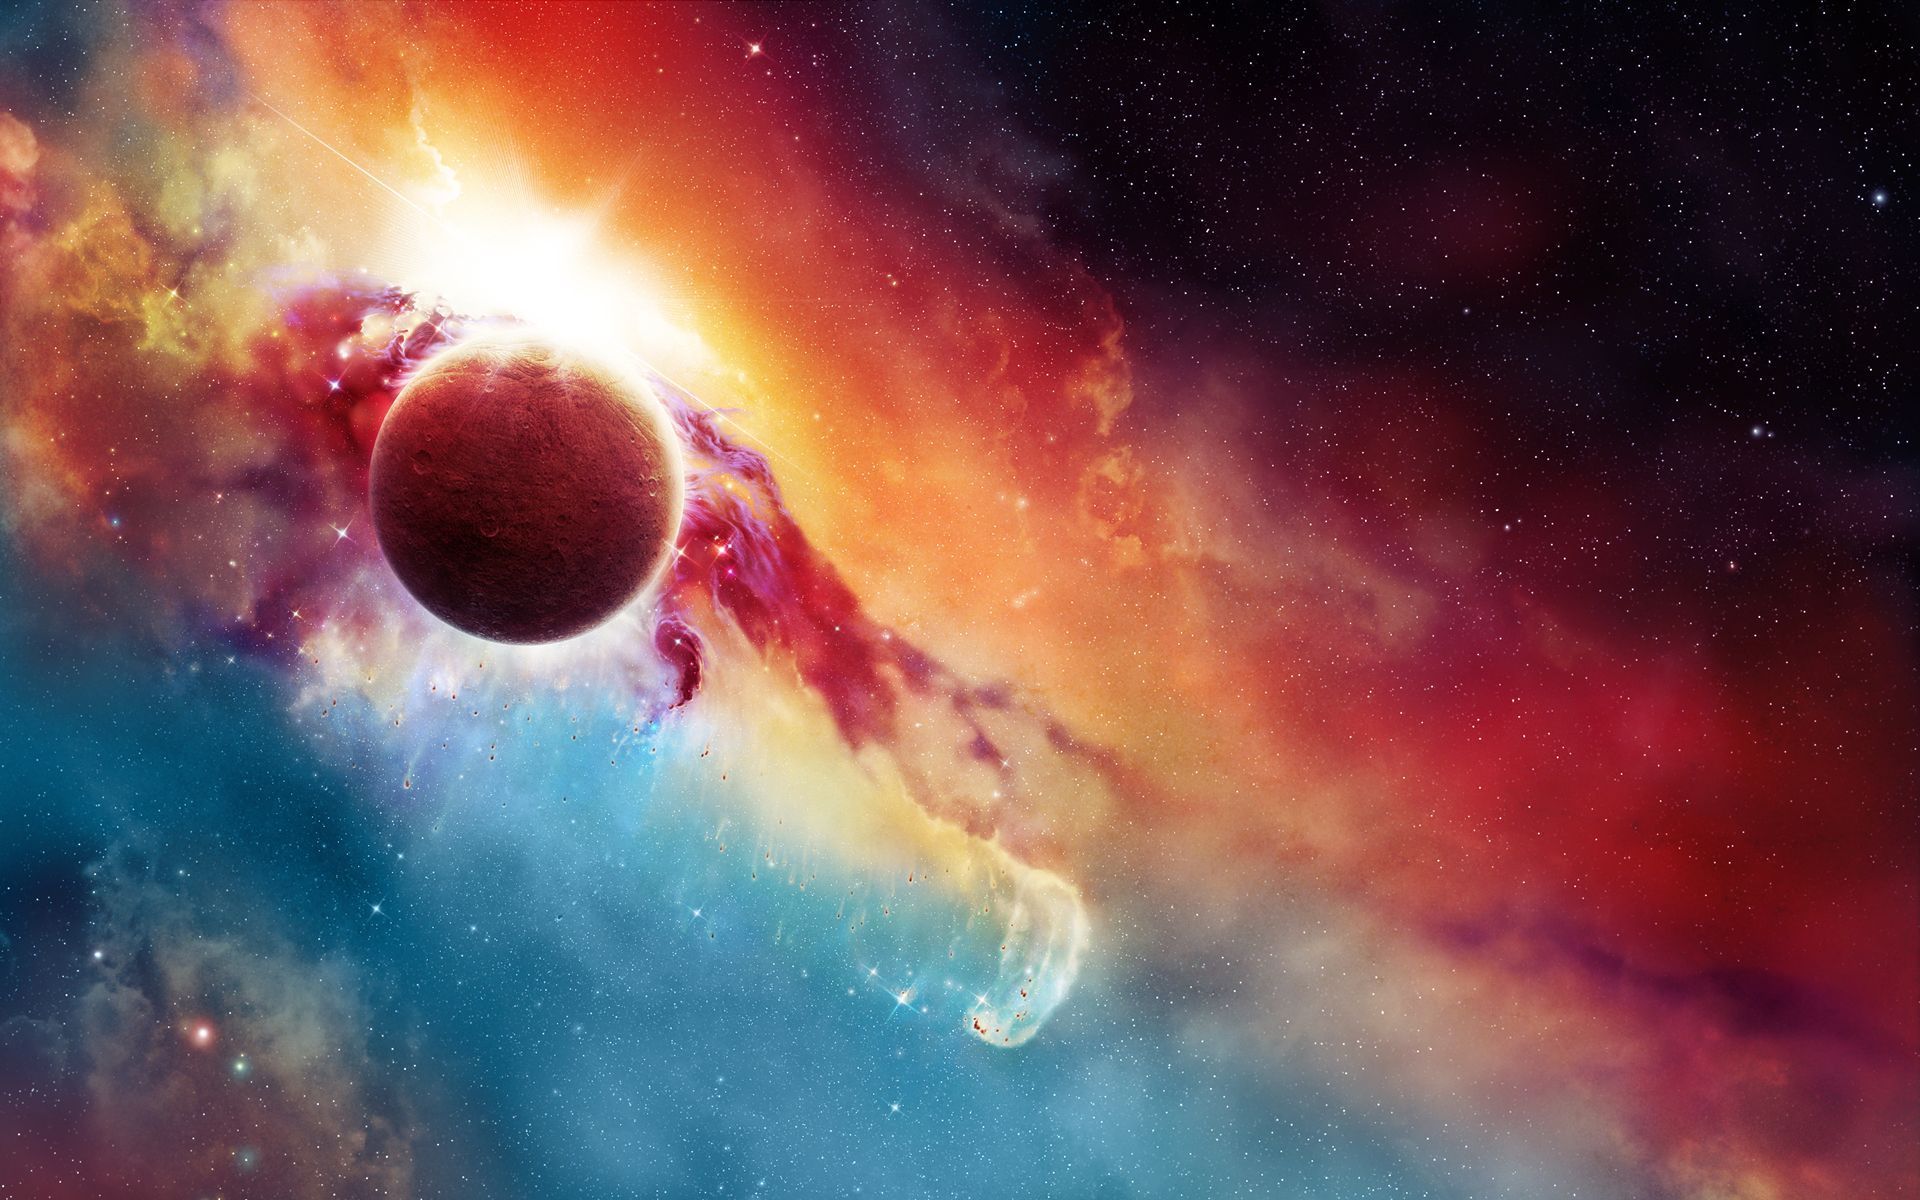 Galaxy Nebula Wallpaper HD - Pics about space